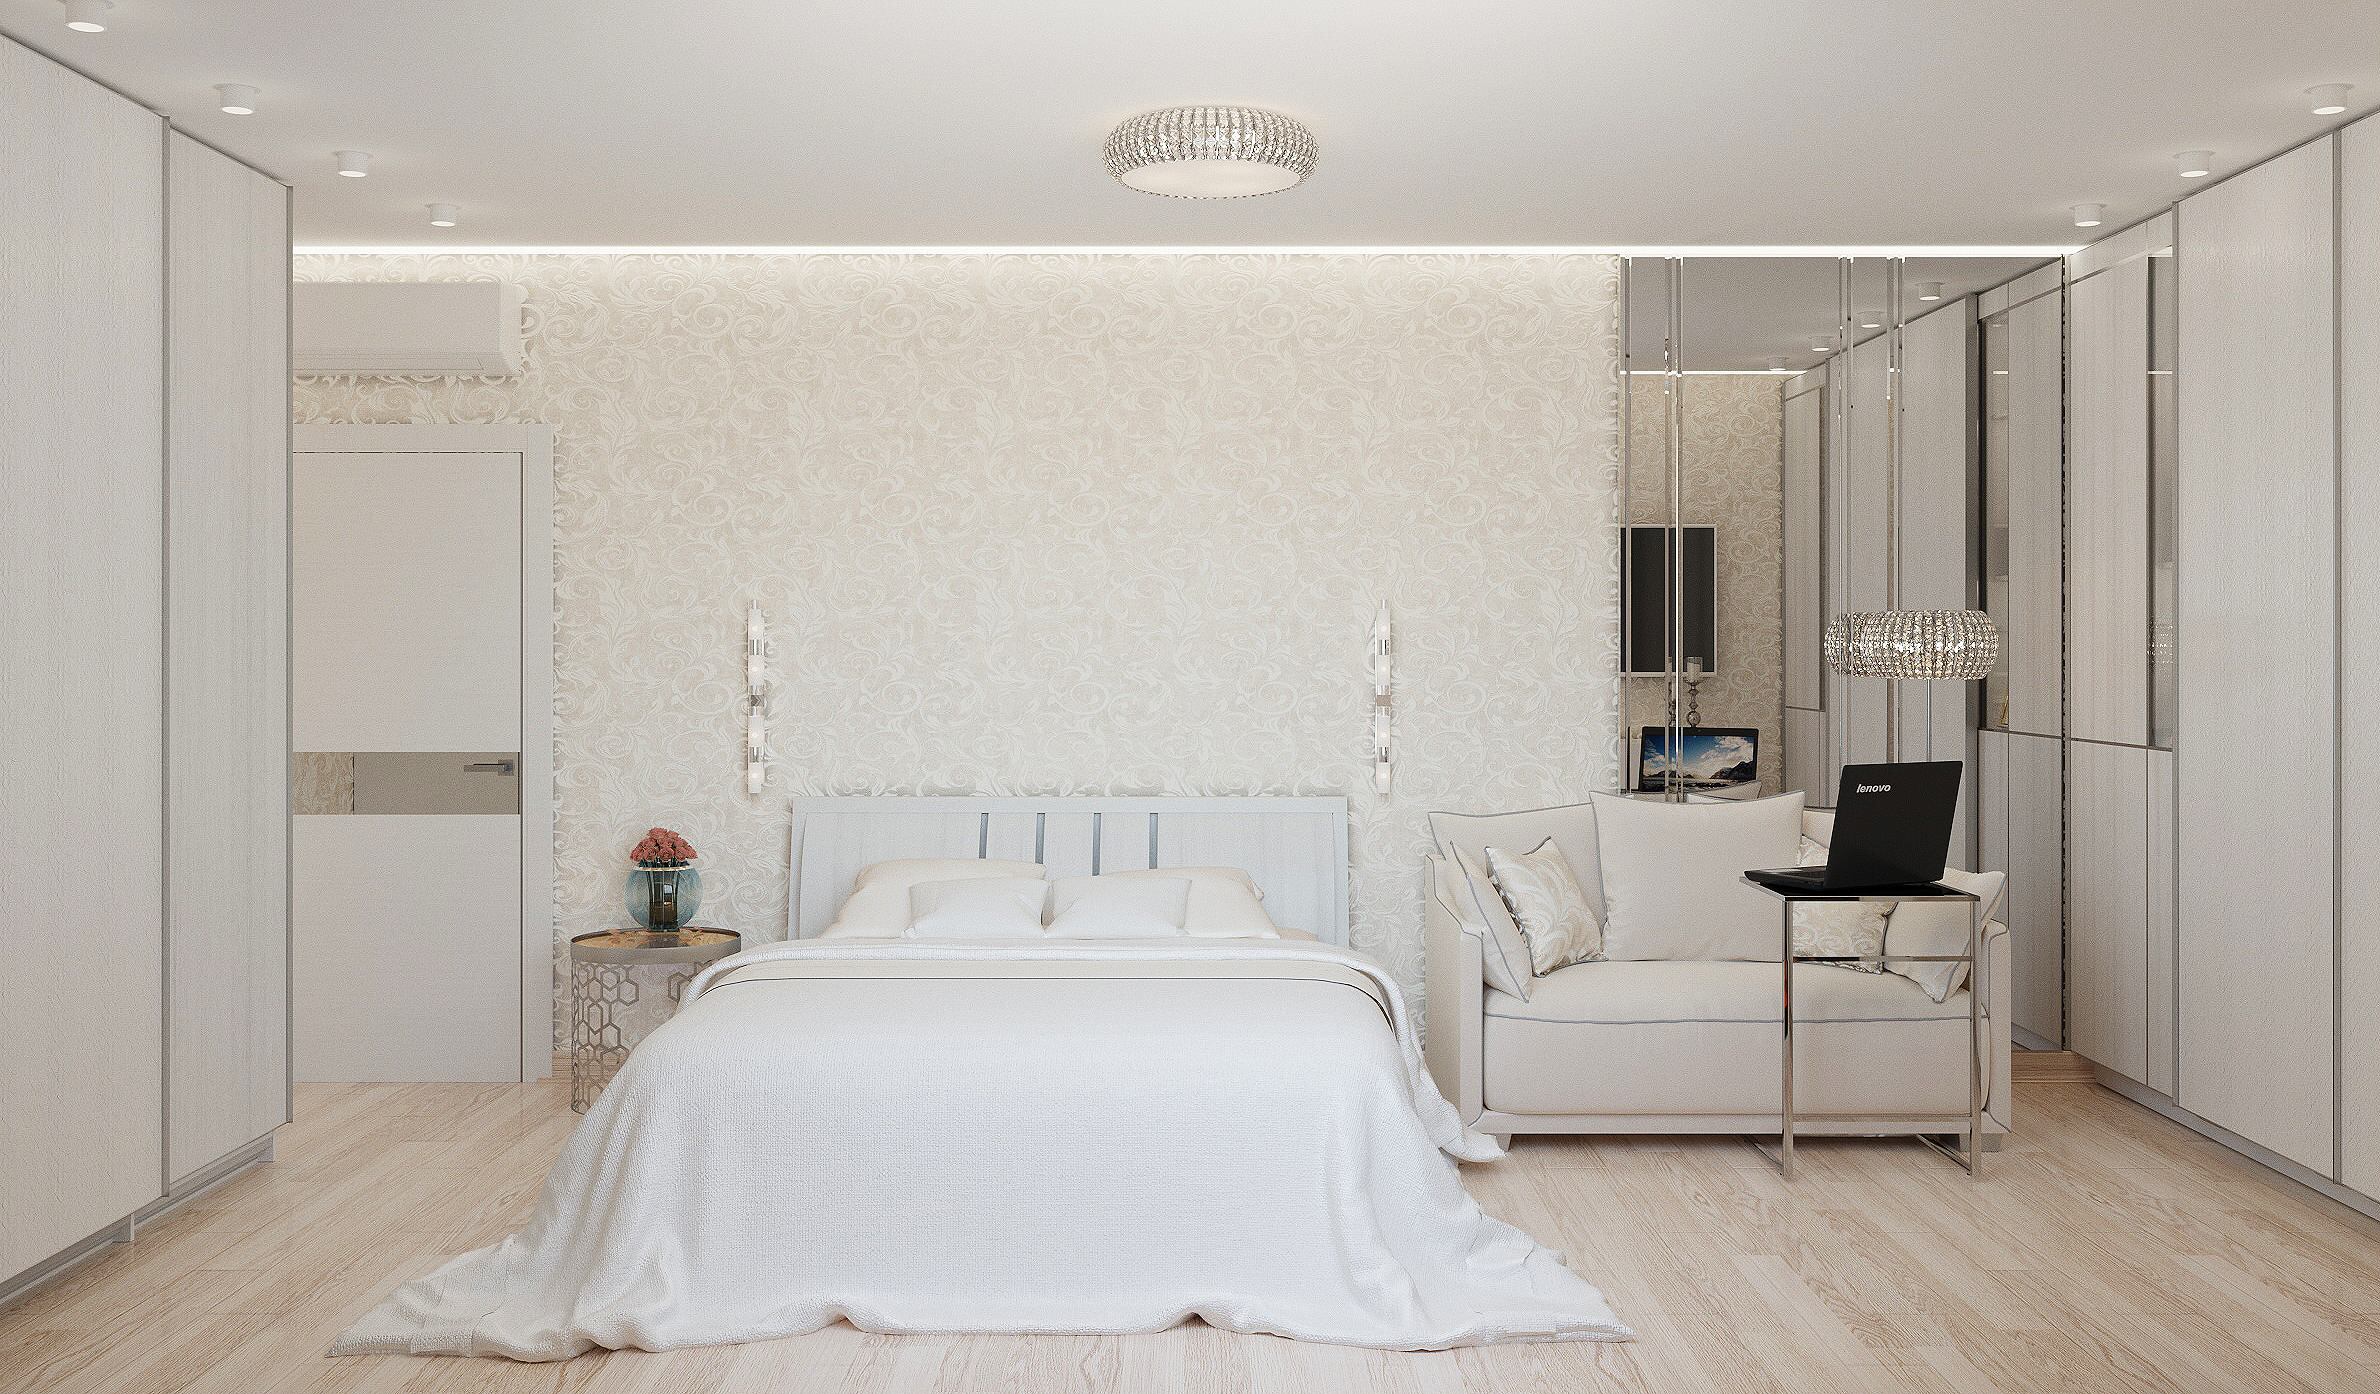 Интерьер спальни cветовыми линиями, подсветкой настенной, подсветкой светодиодной, светильниками над кроватью и с подсветкой в современном стиле